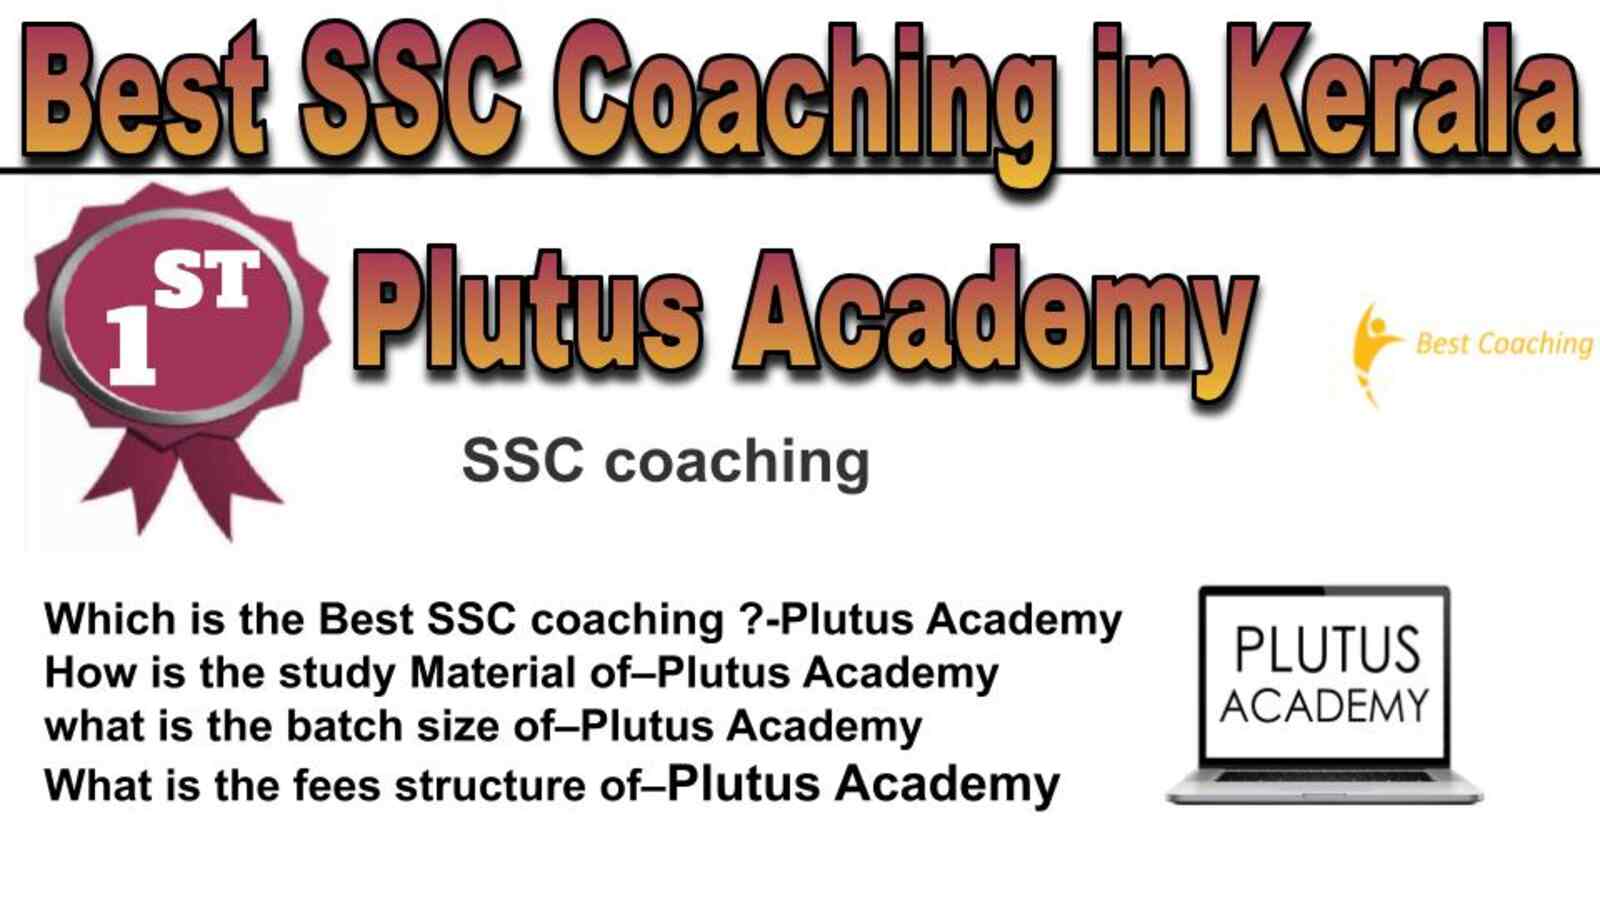 Rank 1 best SSC coaching in Kerala